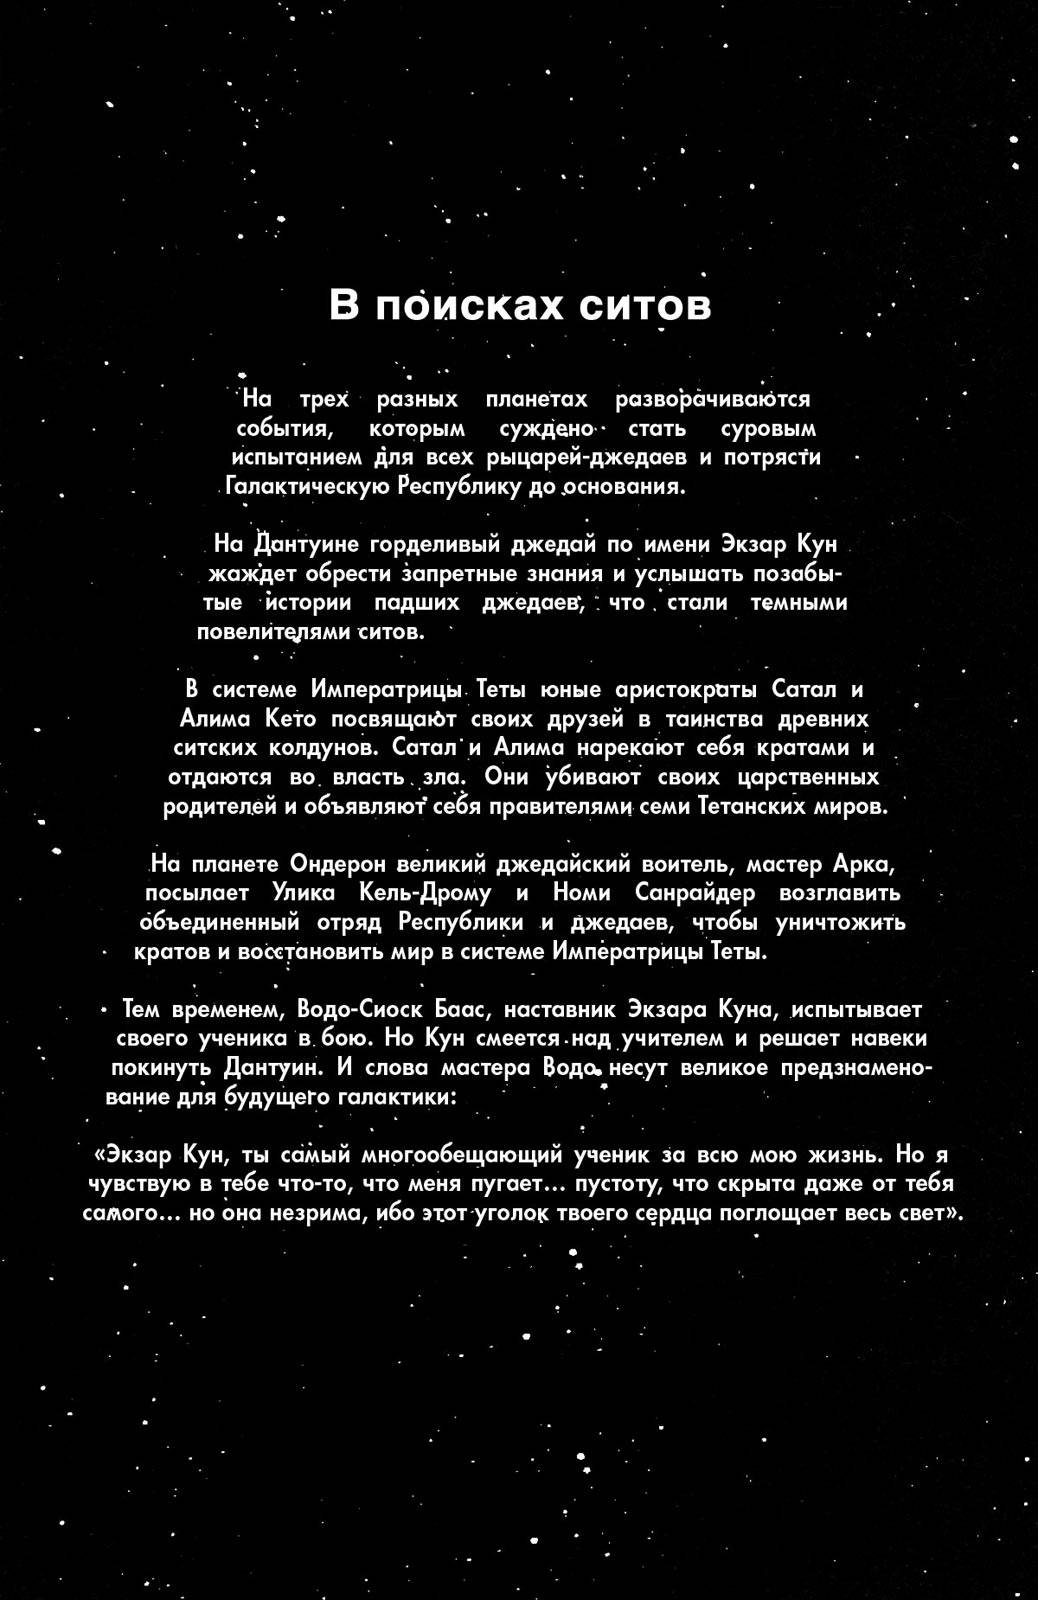 Звездные Войны: Сказания о Джедаях: Темные Повелители Ситов №2 онлайн